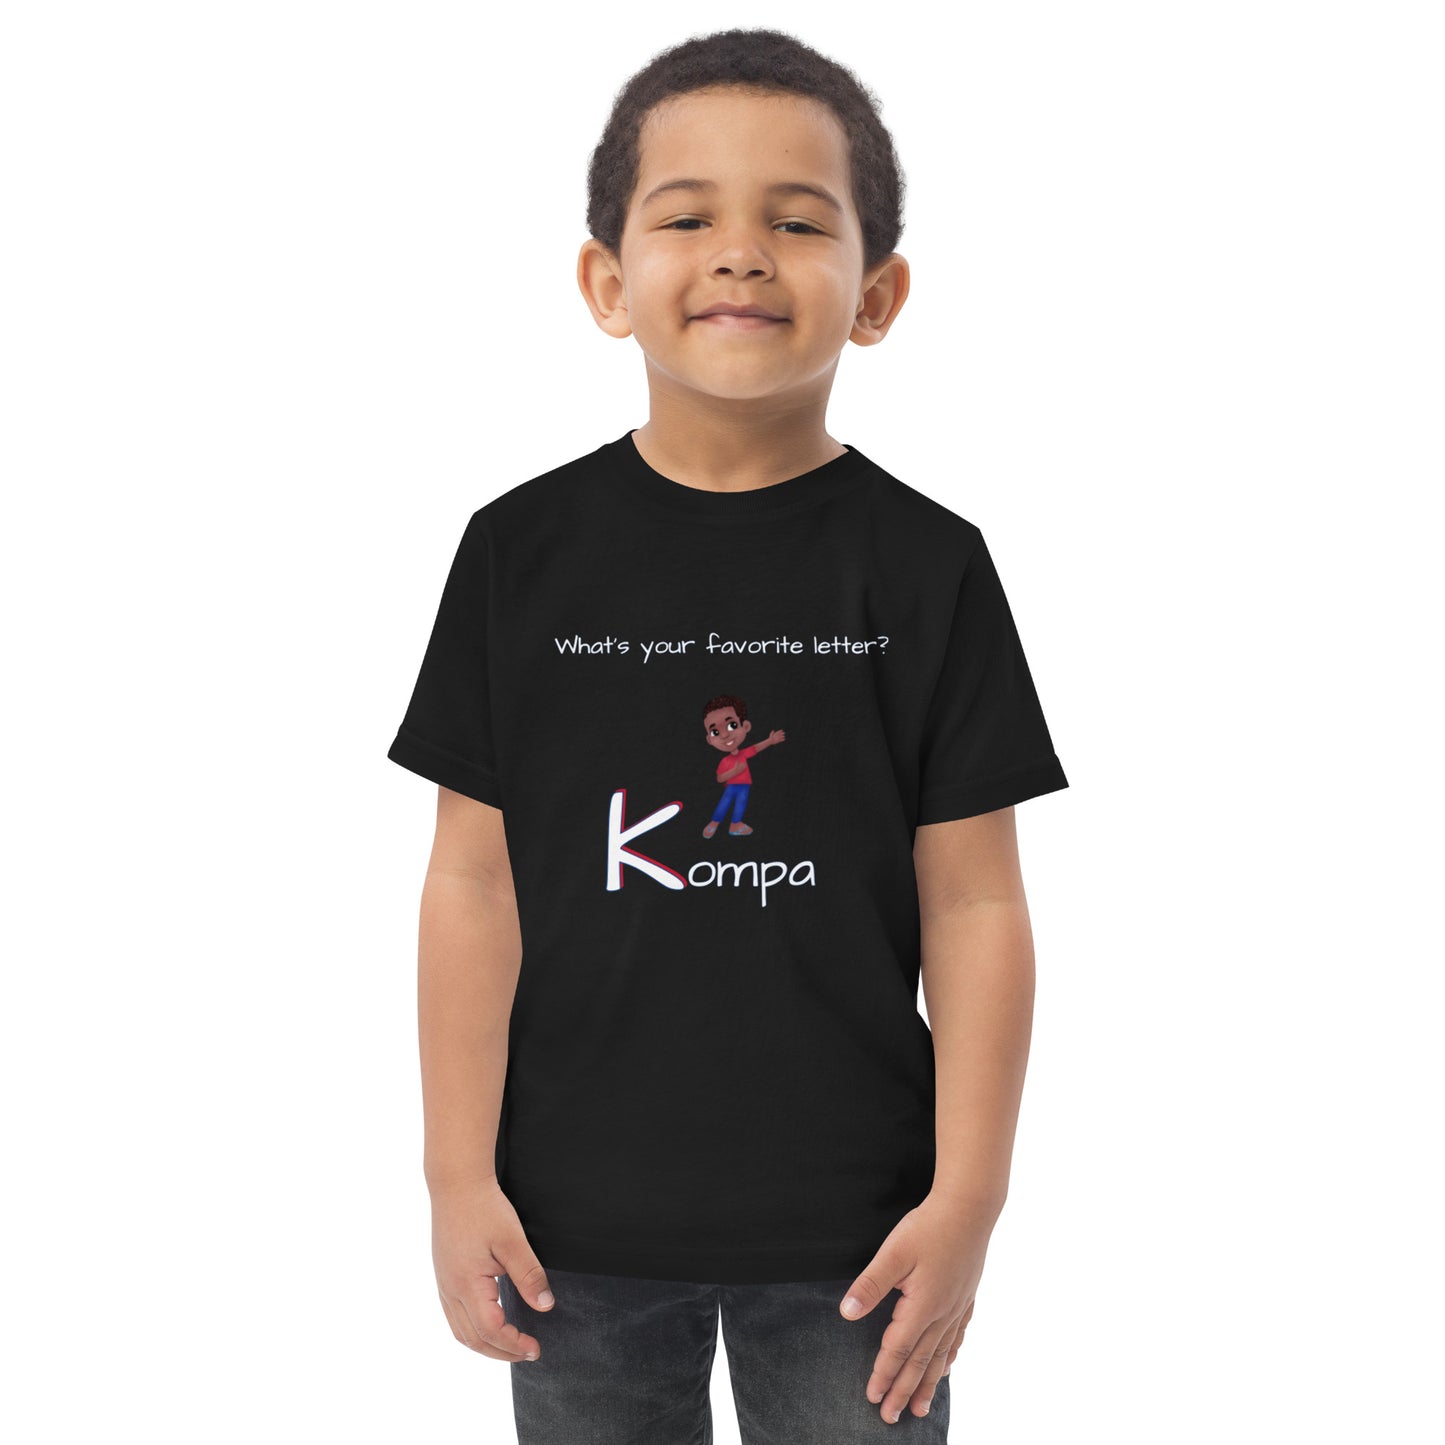 CAF4Kids Black Toddler T-shirt - Letter K